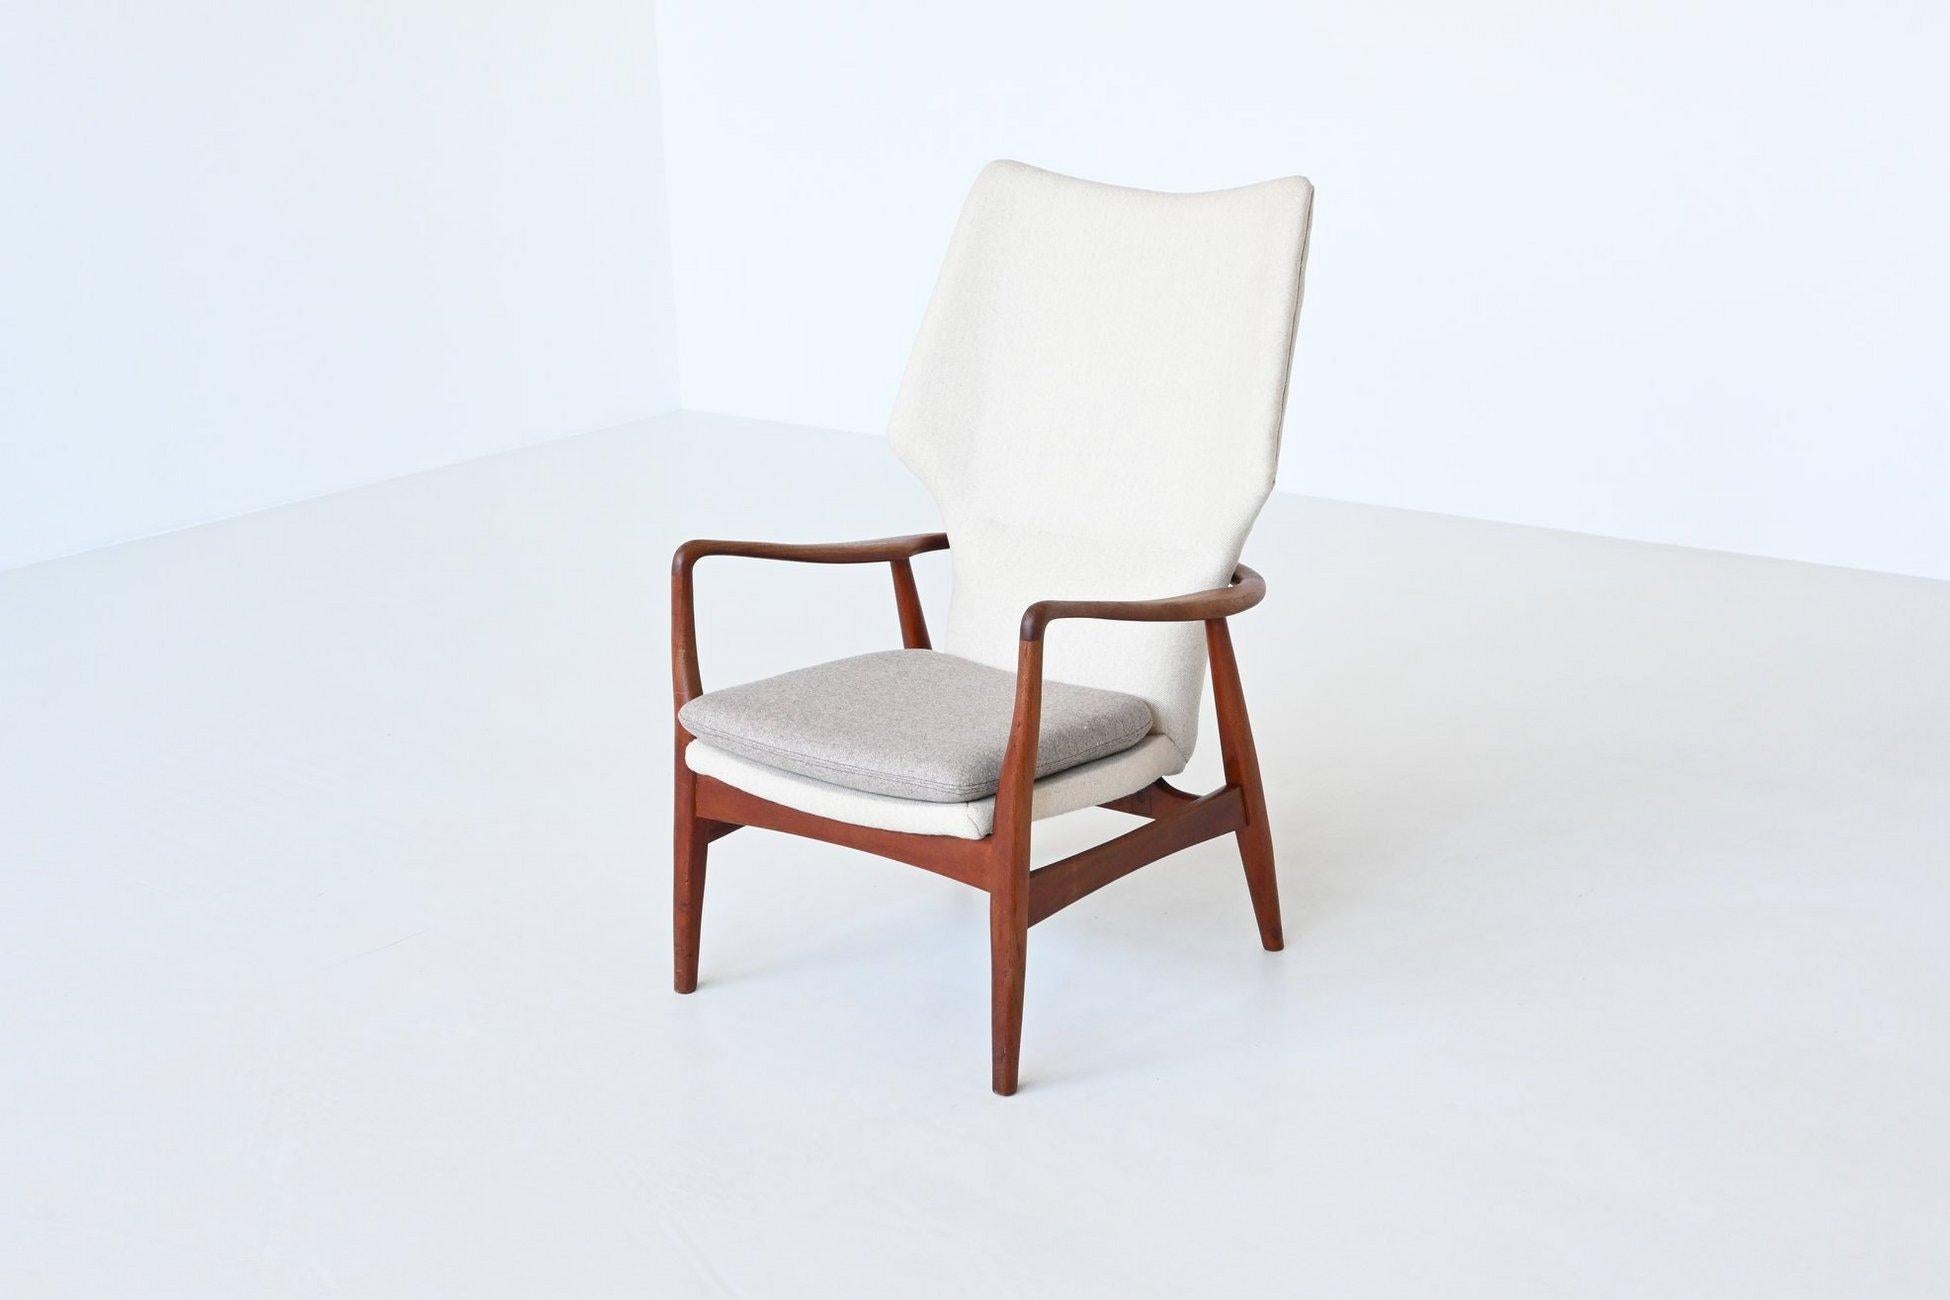 Magnifique chaise longue de forme modèle Kirsten conçue par les designers danois Arnold Madsen & Henry Schubell et fabriquée par Bovenkamp, Pays-Bas 1960. Arnold Madsen a travaillé pour Bovenkamp à la fin des années 1950 et au début des années 1960.